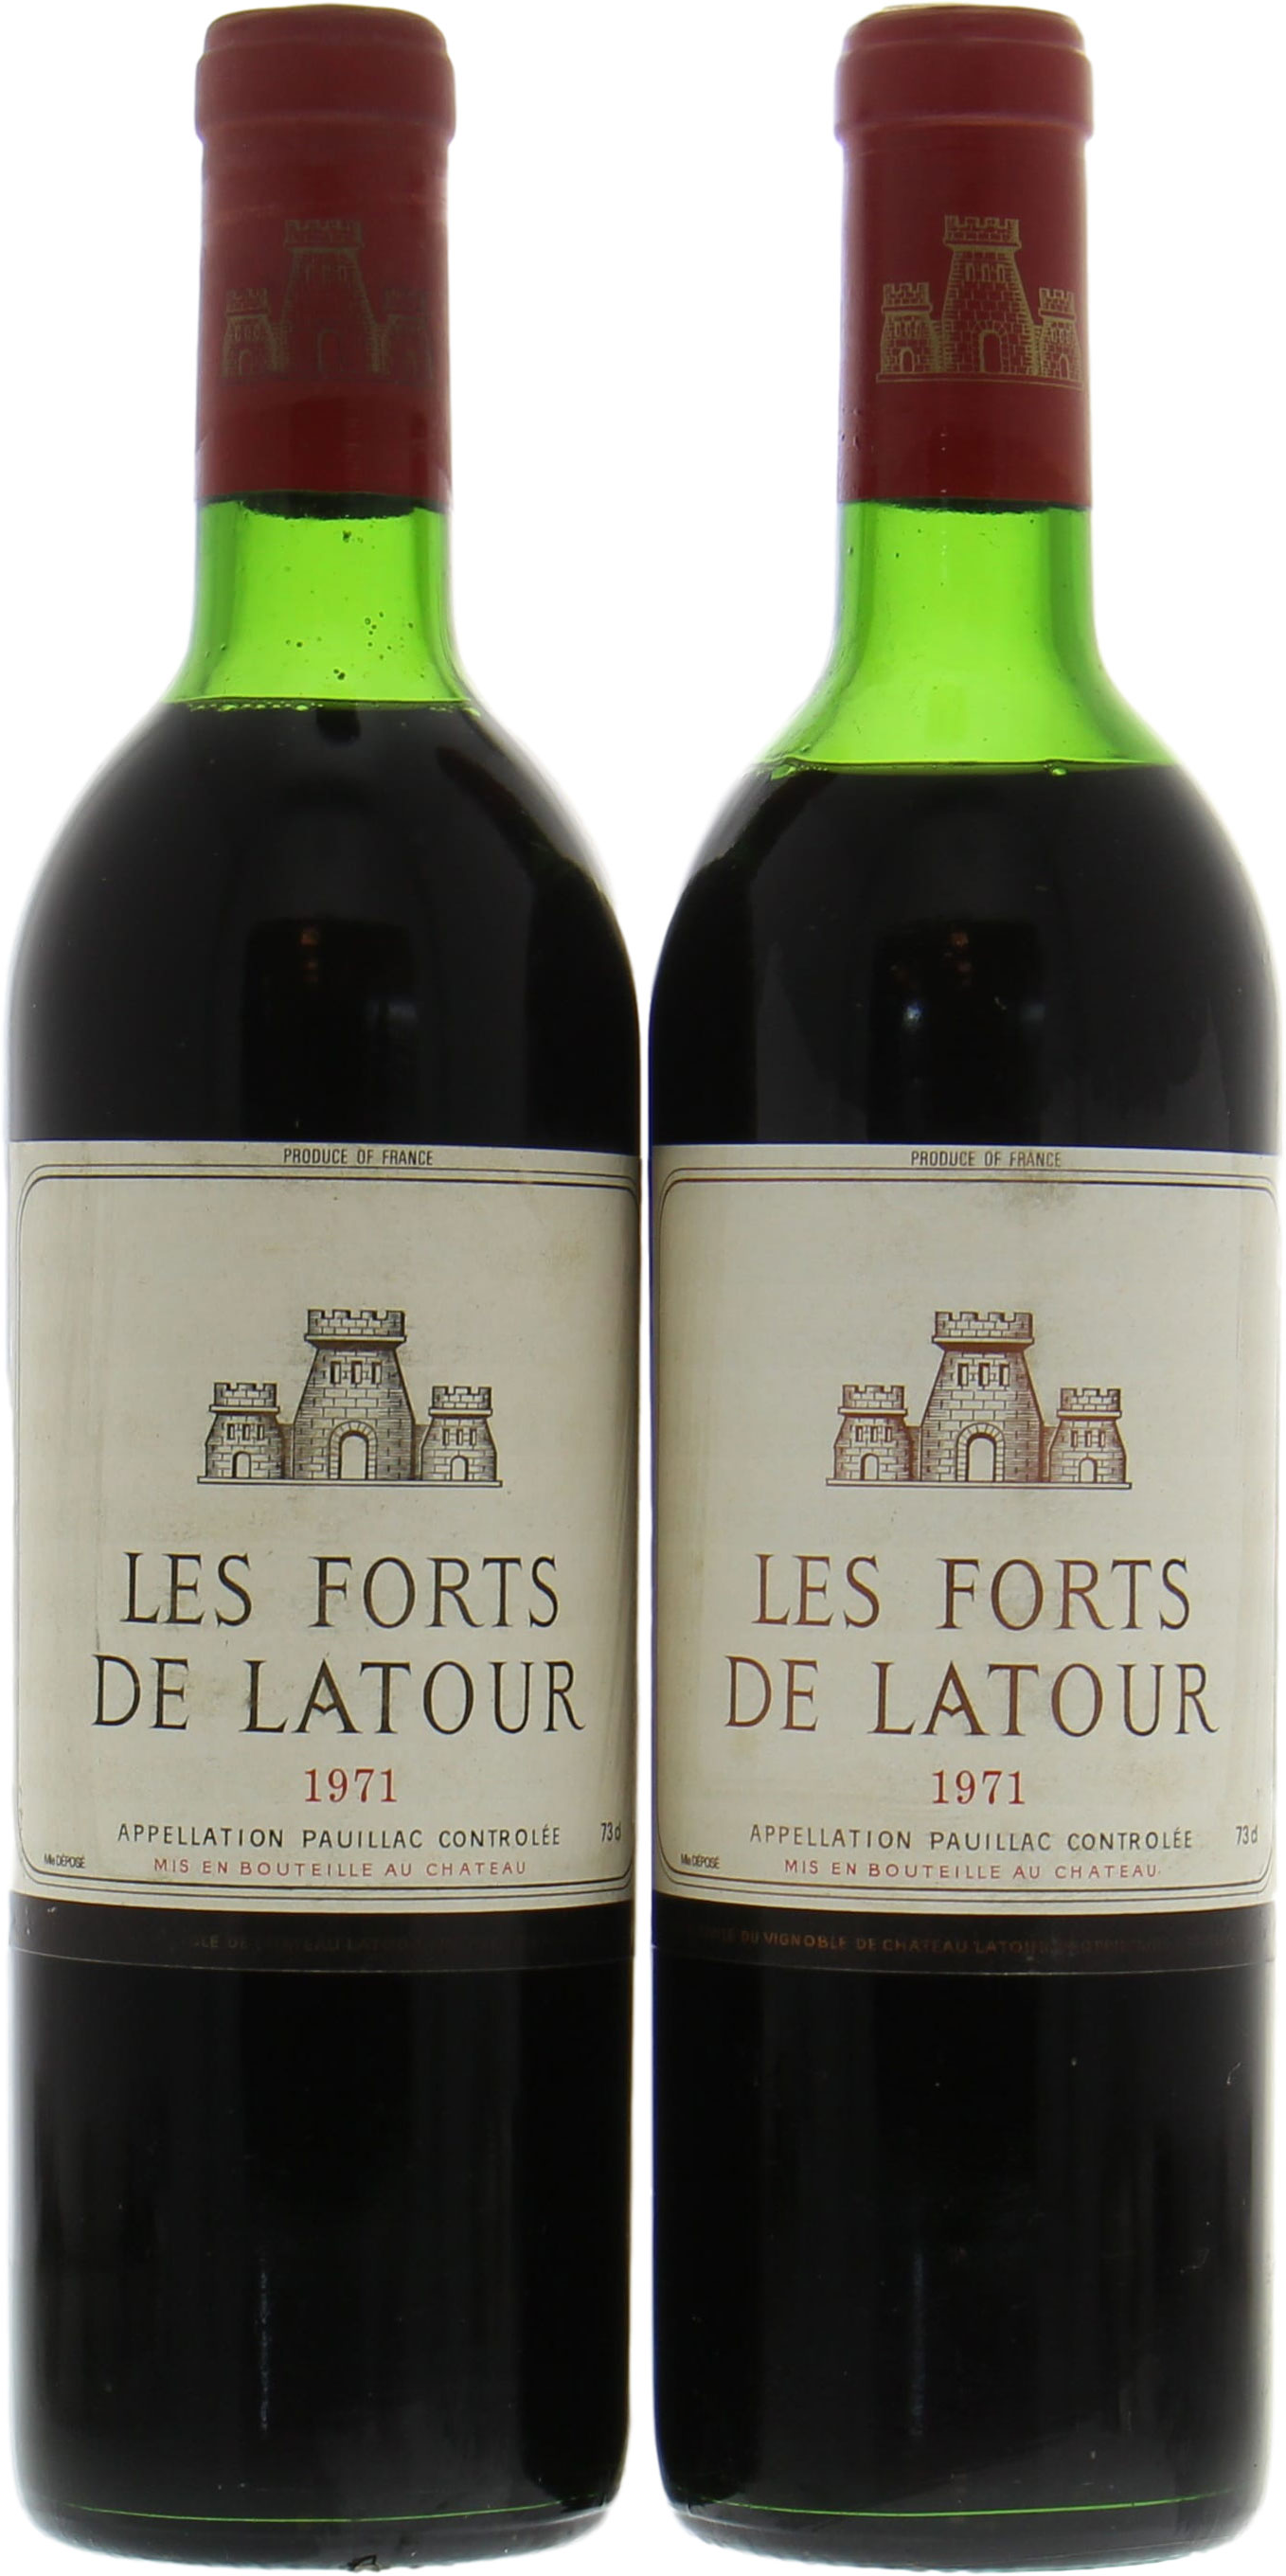 Chateau Latour - Les Forts de Latour 1971